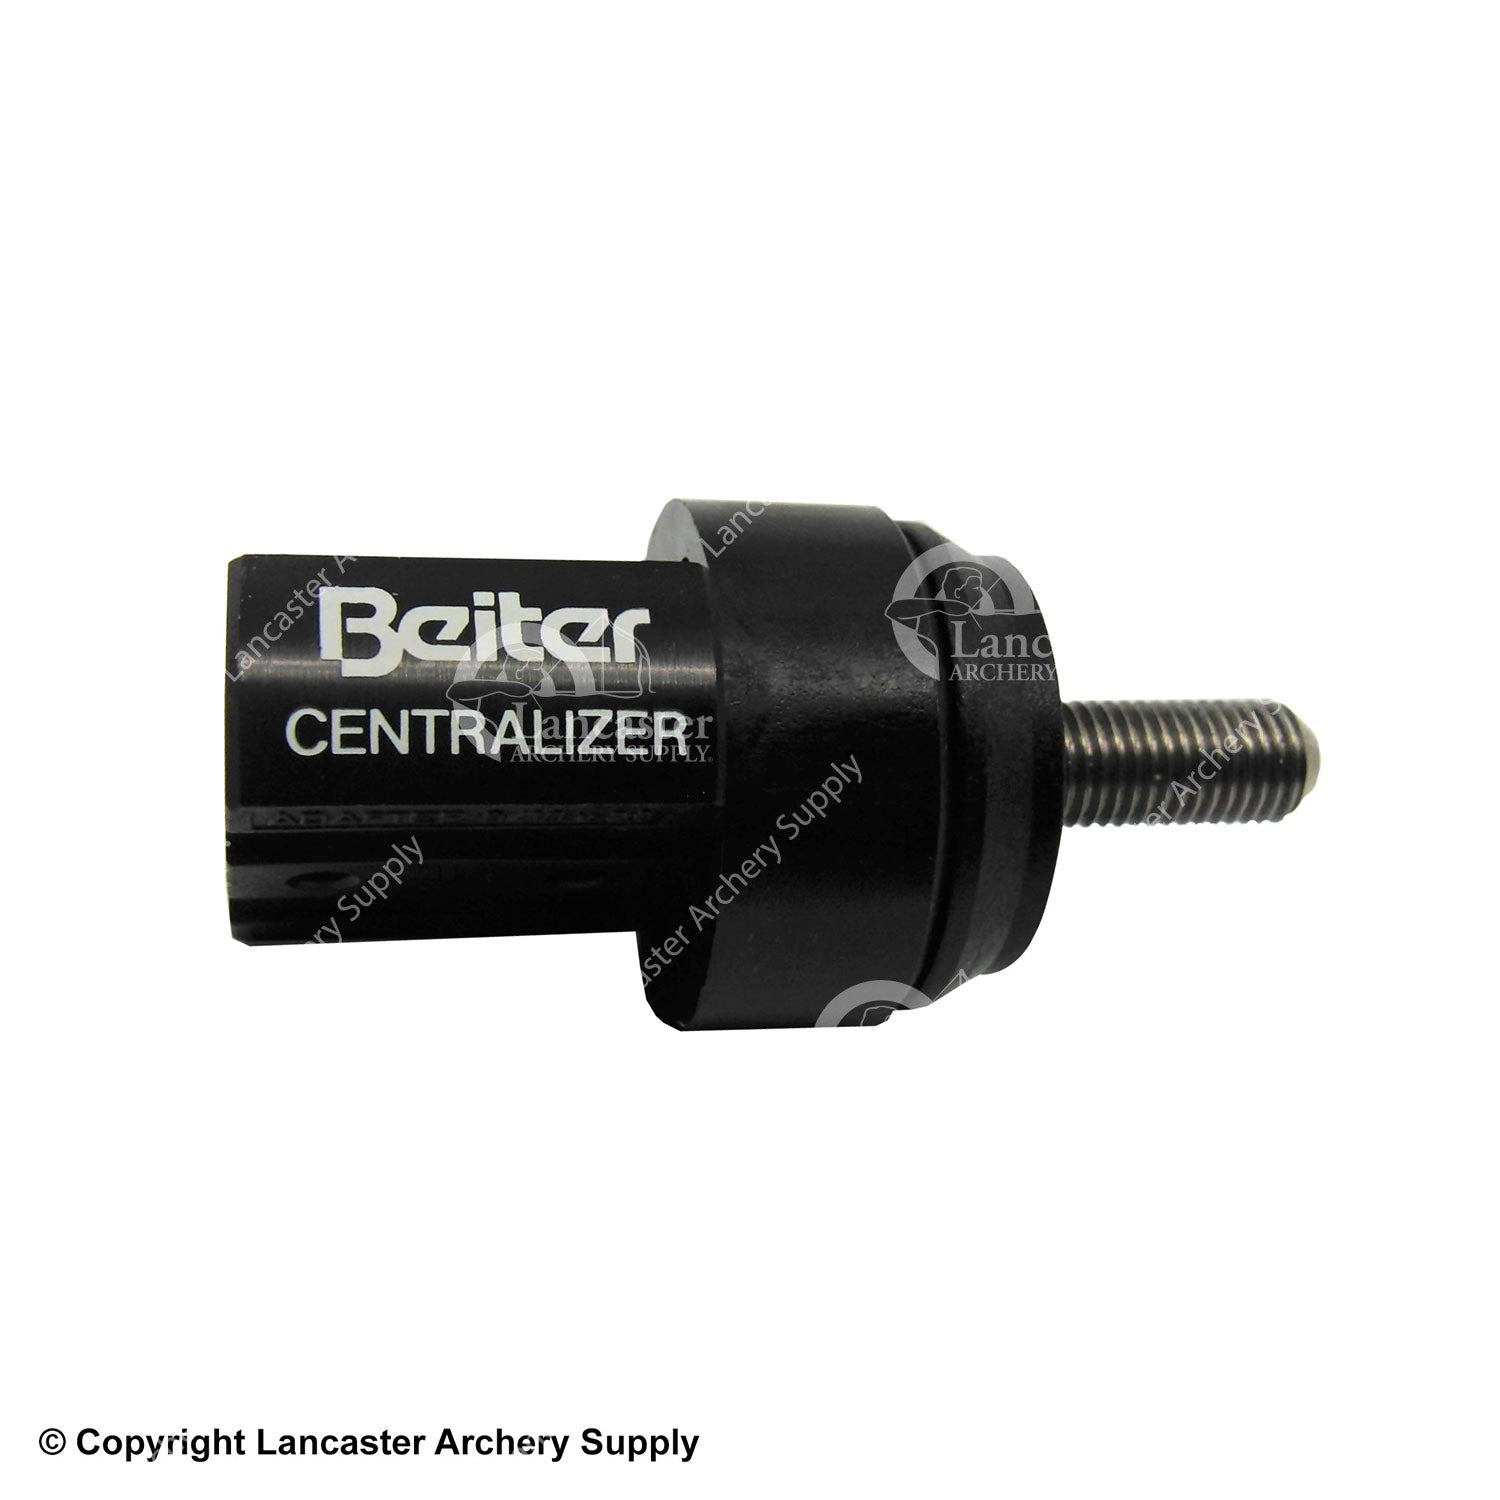 Beiter Lock Centralizer Adapter (5/16